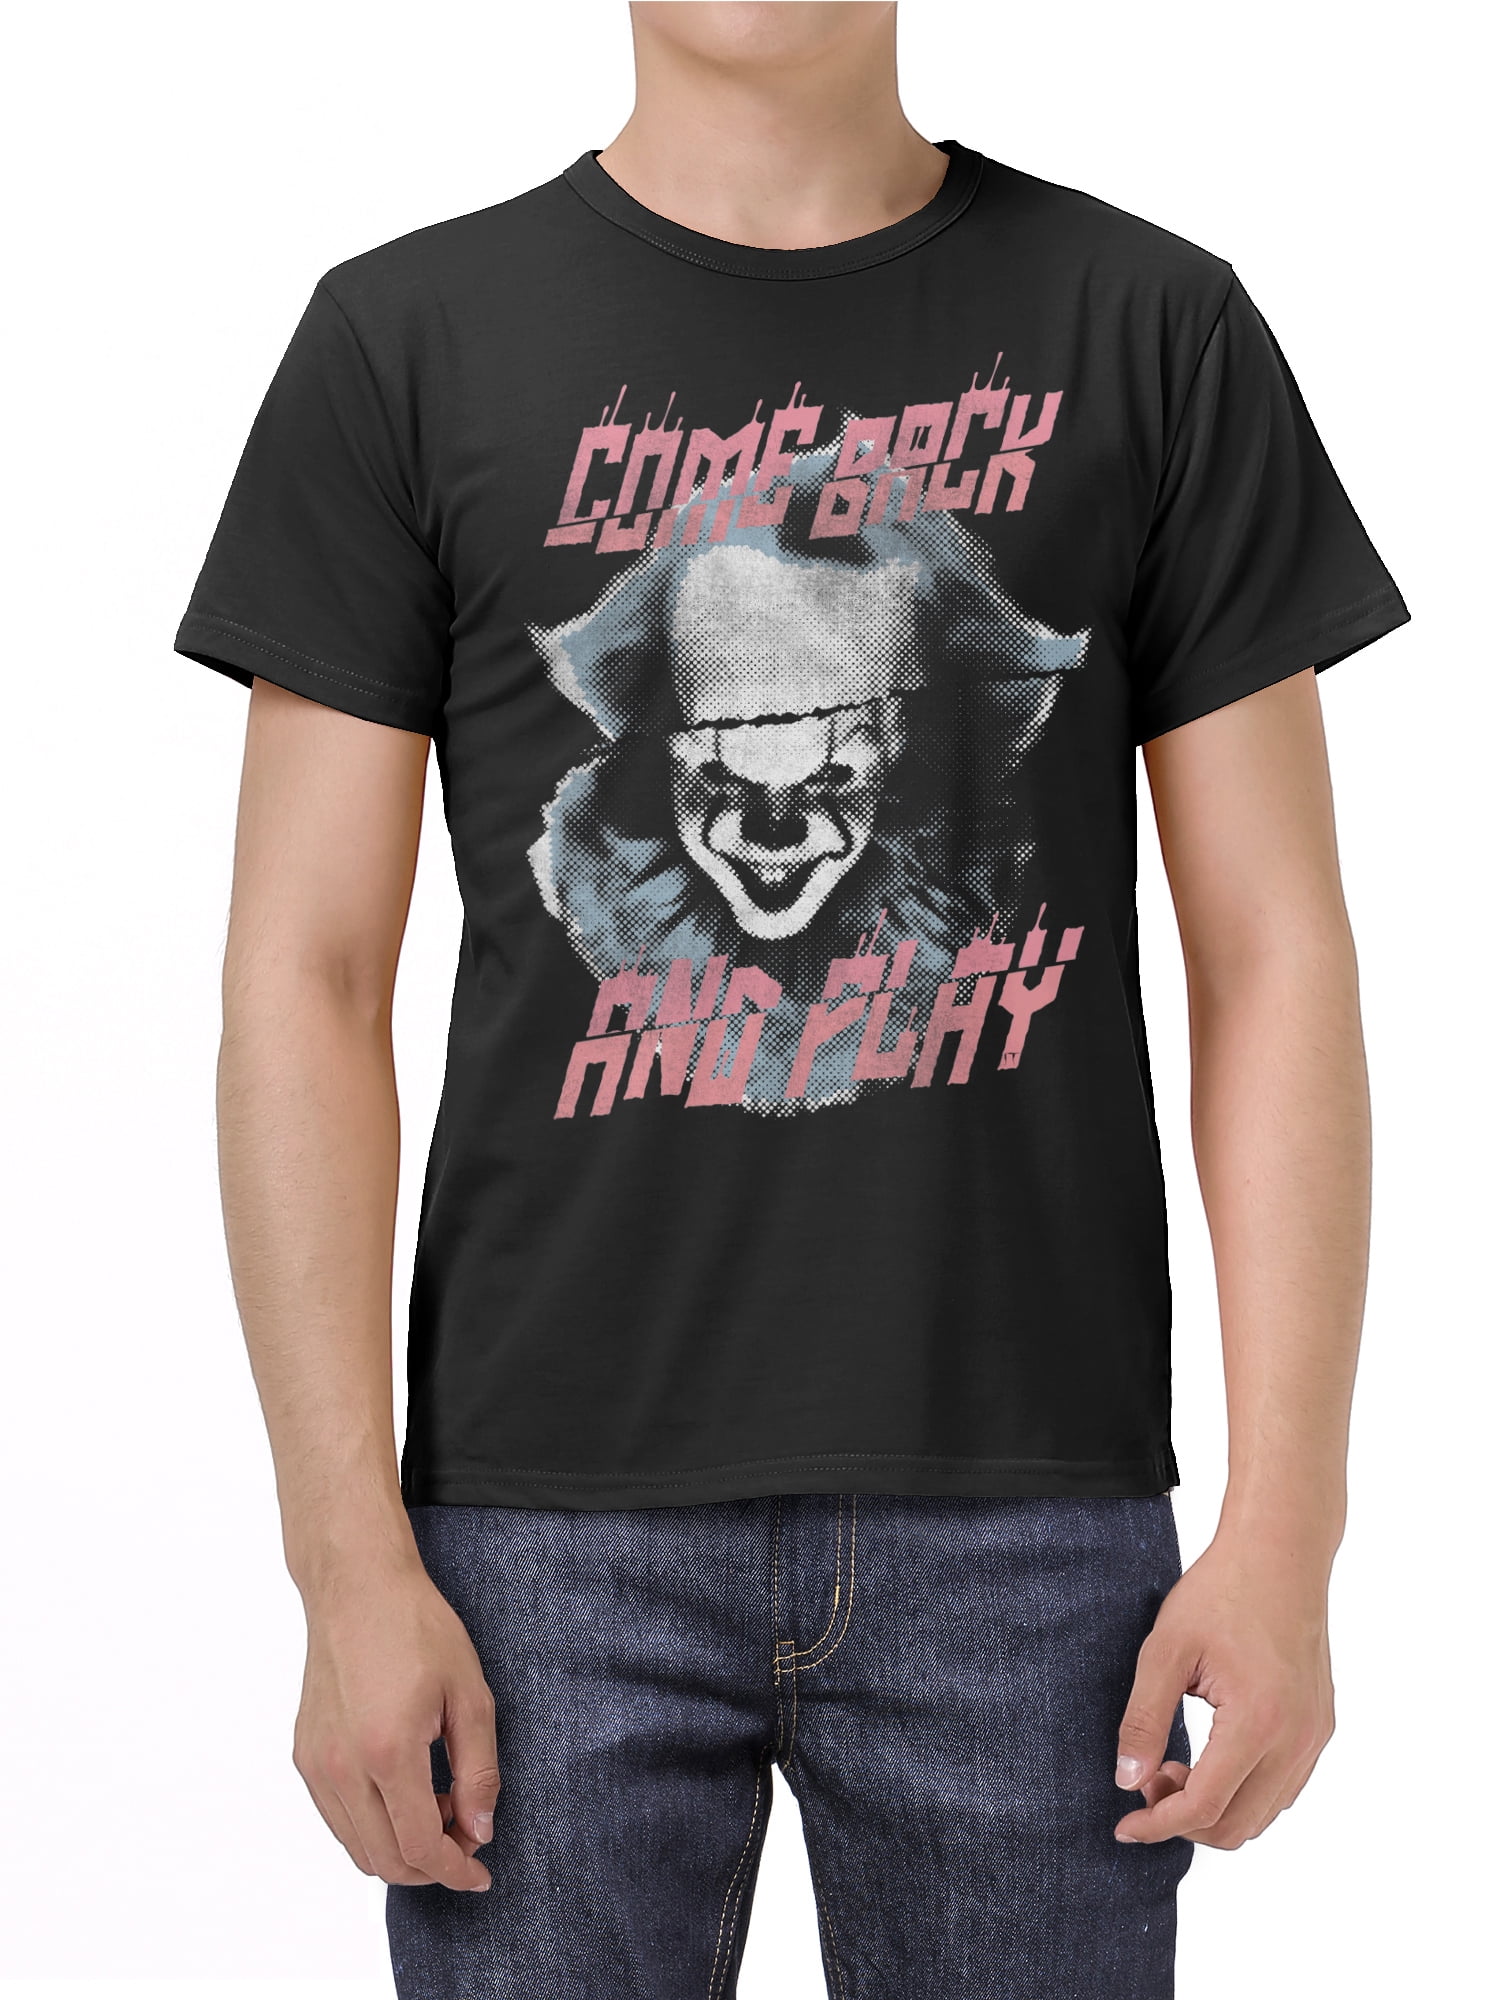 3D Print Sweatshirt Hoodie Stephen King It Pennywise Horror Clown Sportswear Y0